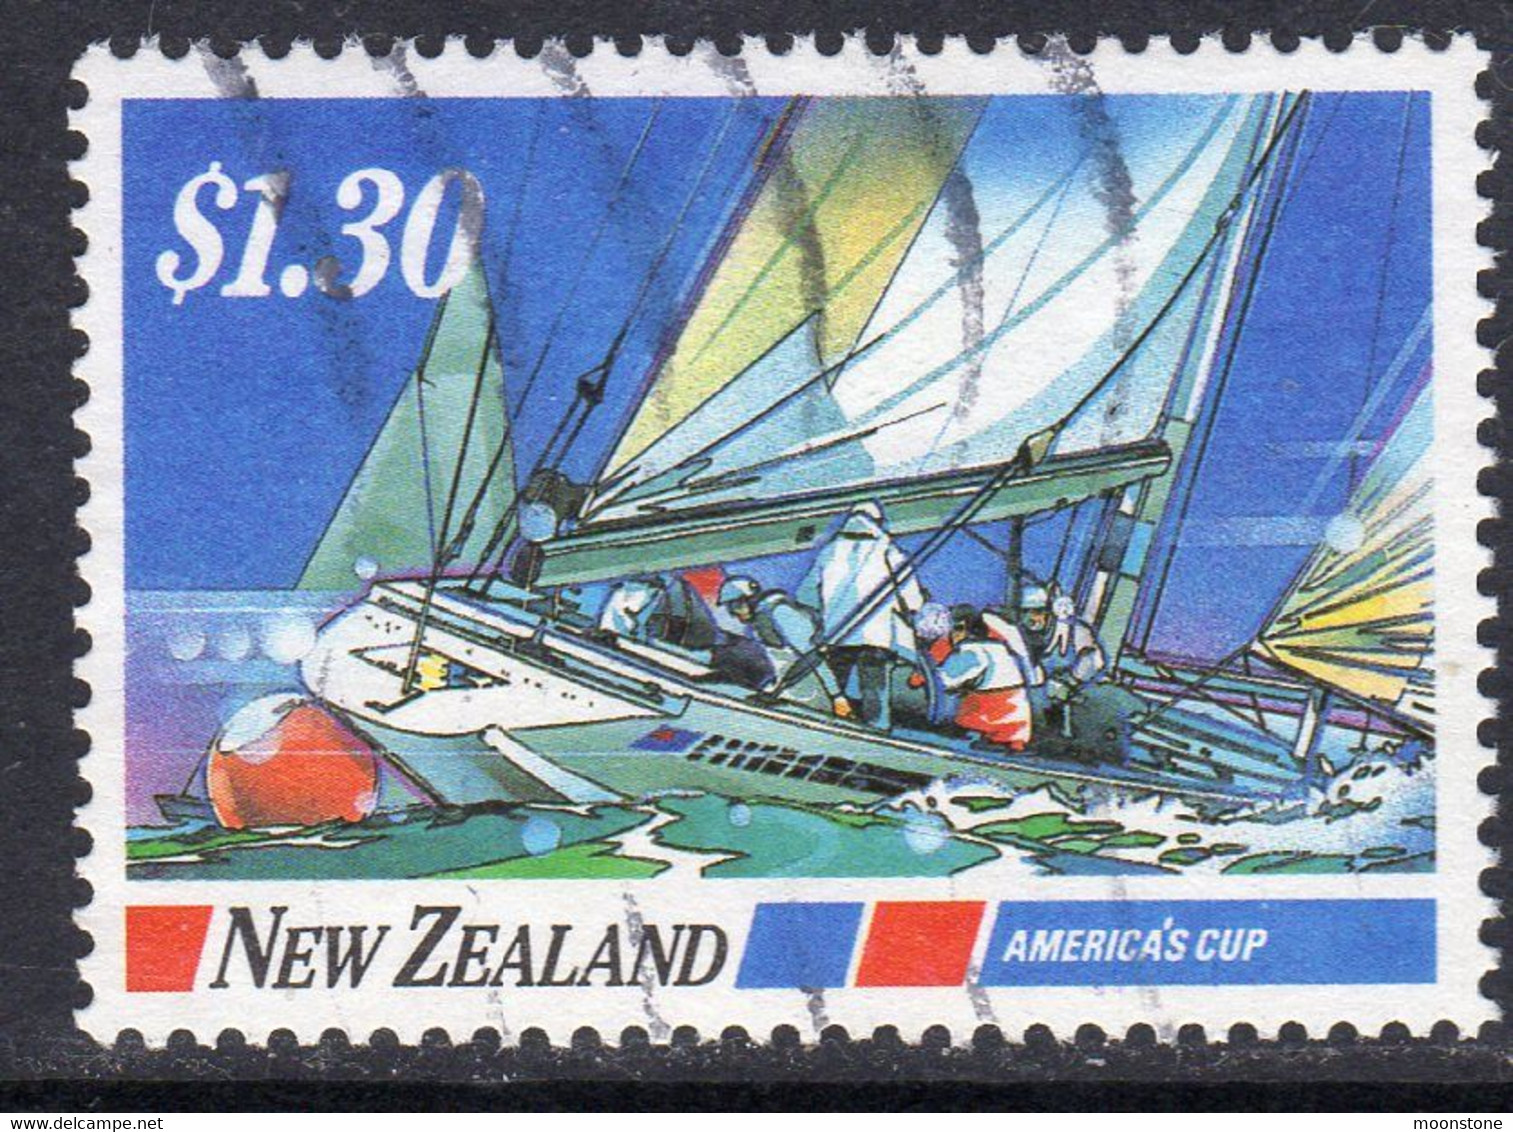 New Zealand 1987 Yachting $1.80 Value, Used, SG 1420 - Usati